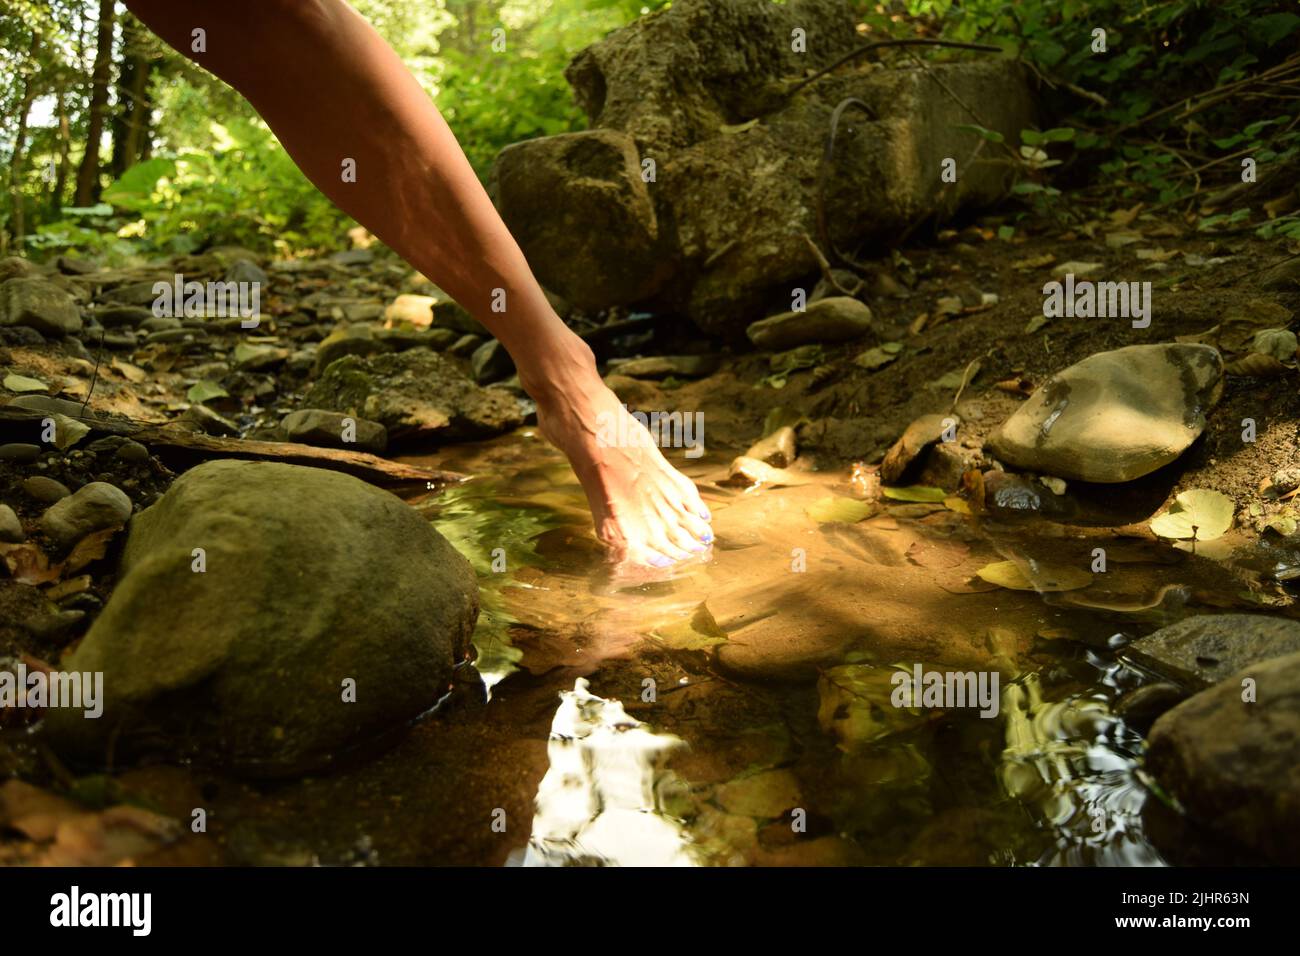 Elegante Bewegung einer Barfußfrau, in der sie ihren Fuß aus einer klaren, frischen Wasserpfütze in der Natur herausnimmt, während der Sonnenstrahl auf ihrem Fuß reflektiert Stockfoto